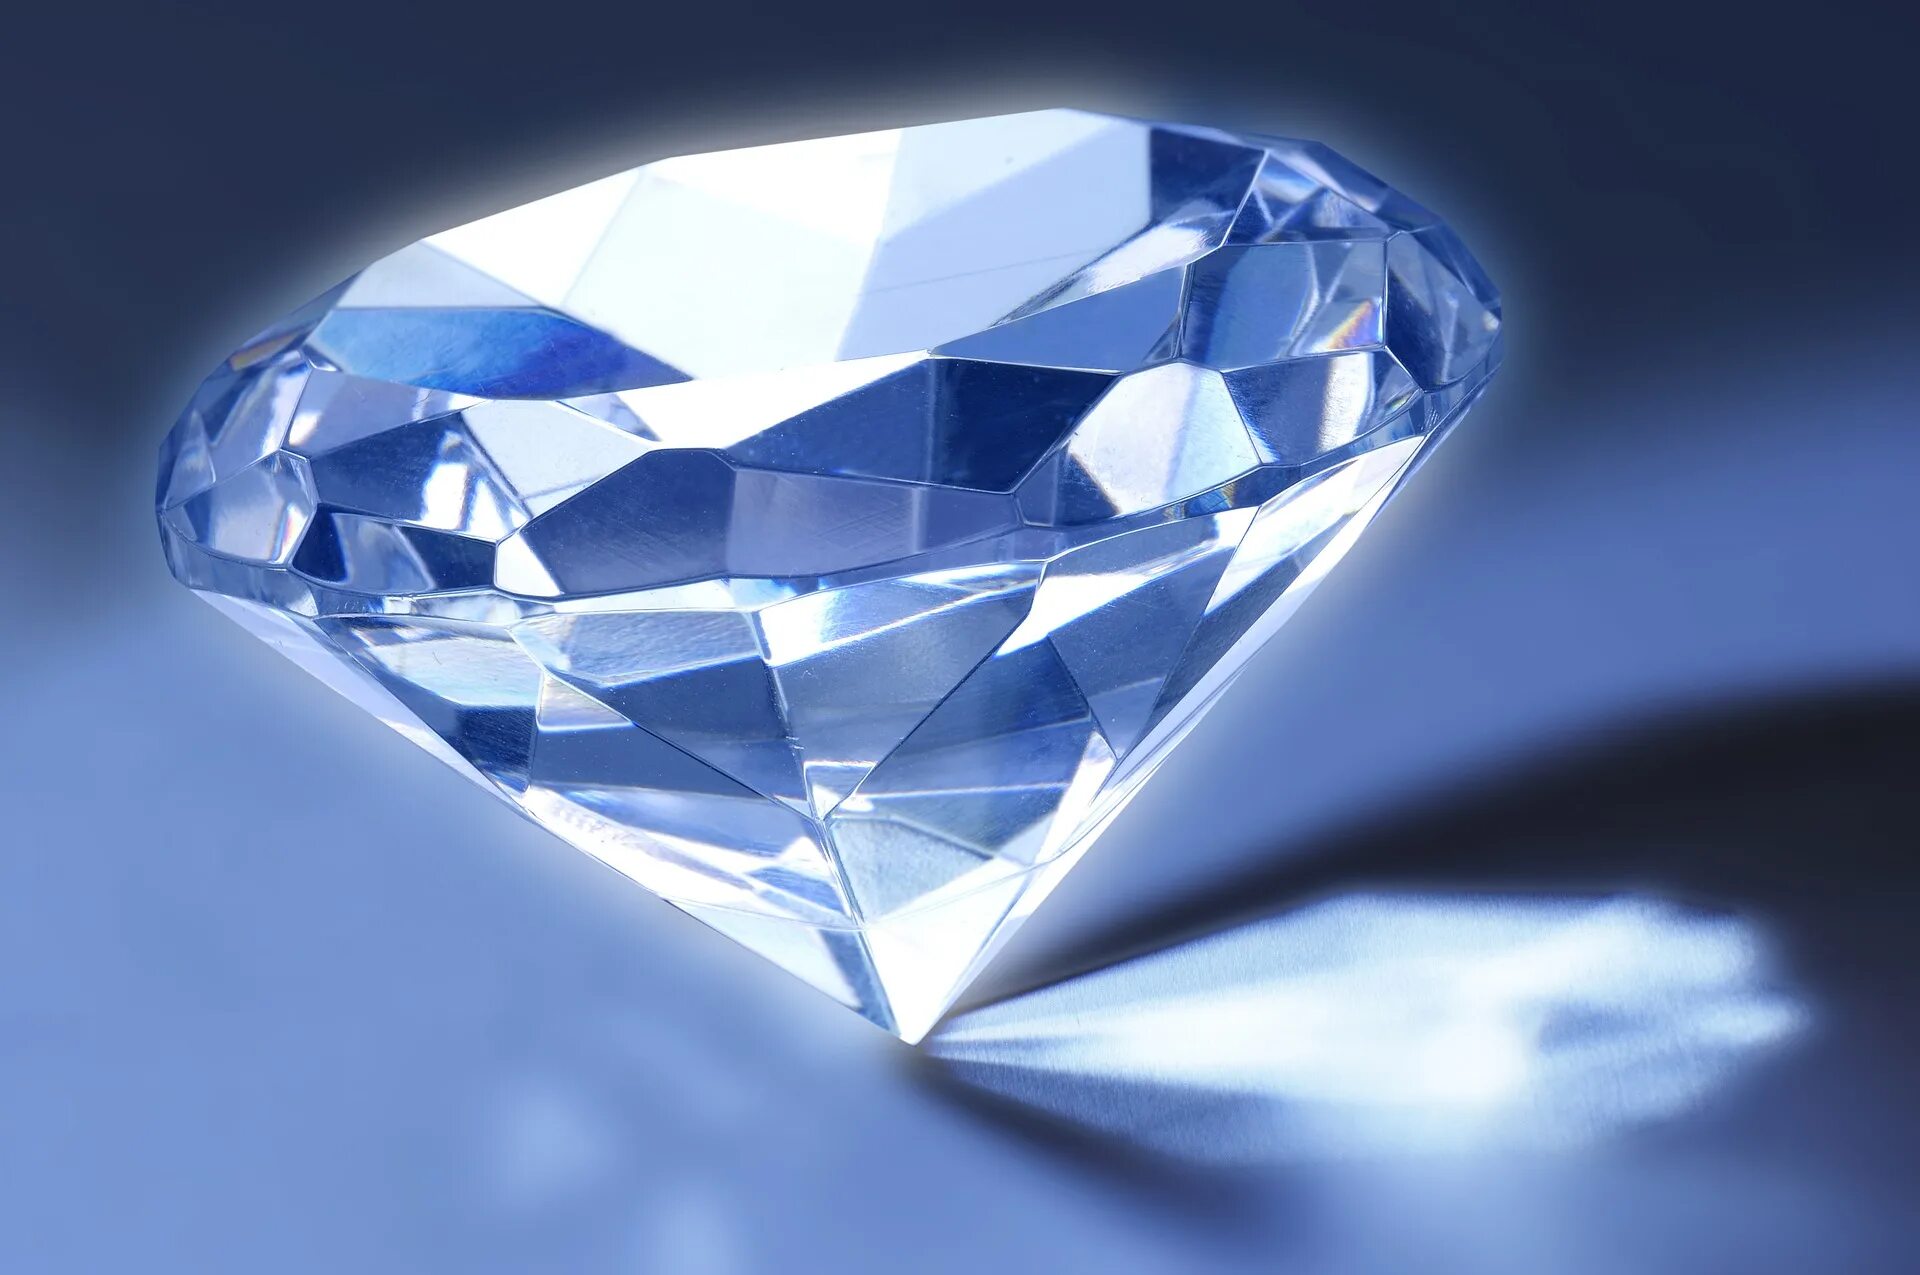 Diamond crystal. Кристал диамонд. Даймонд (диамонд) / Diamond.